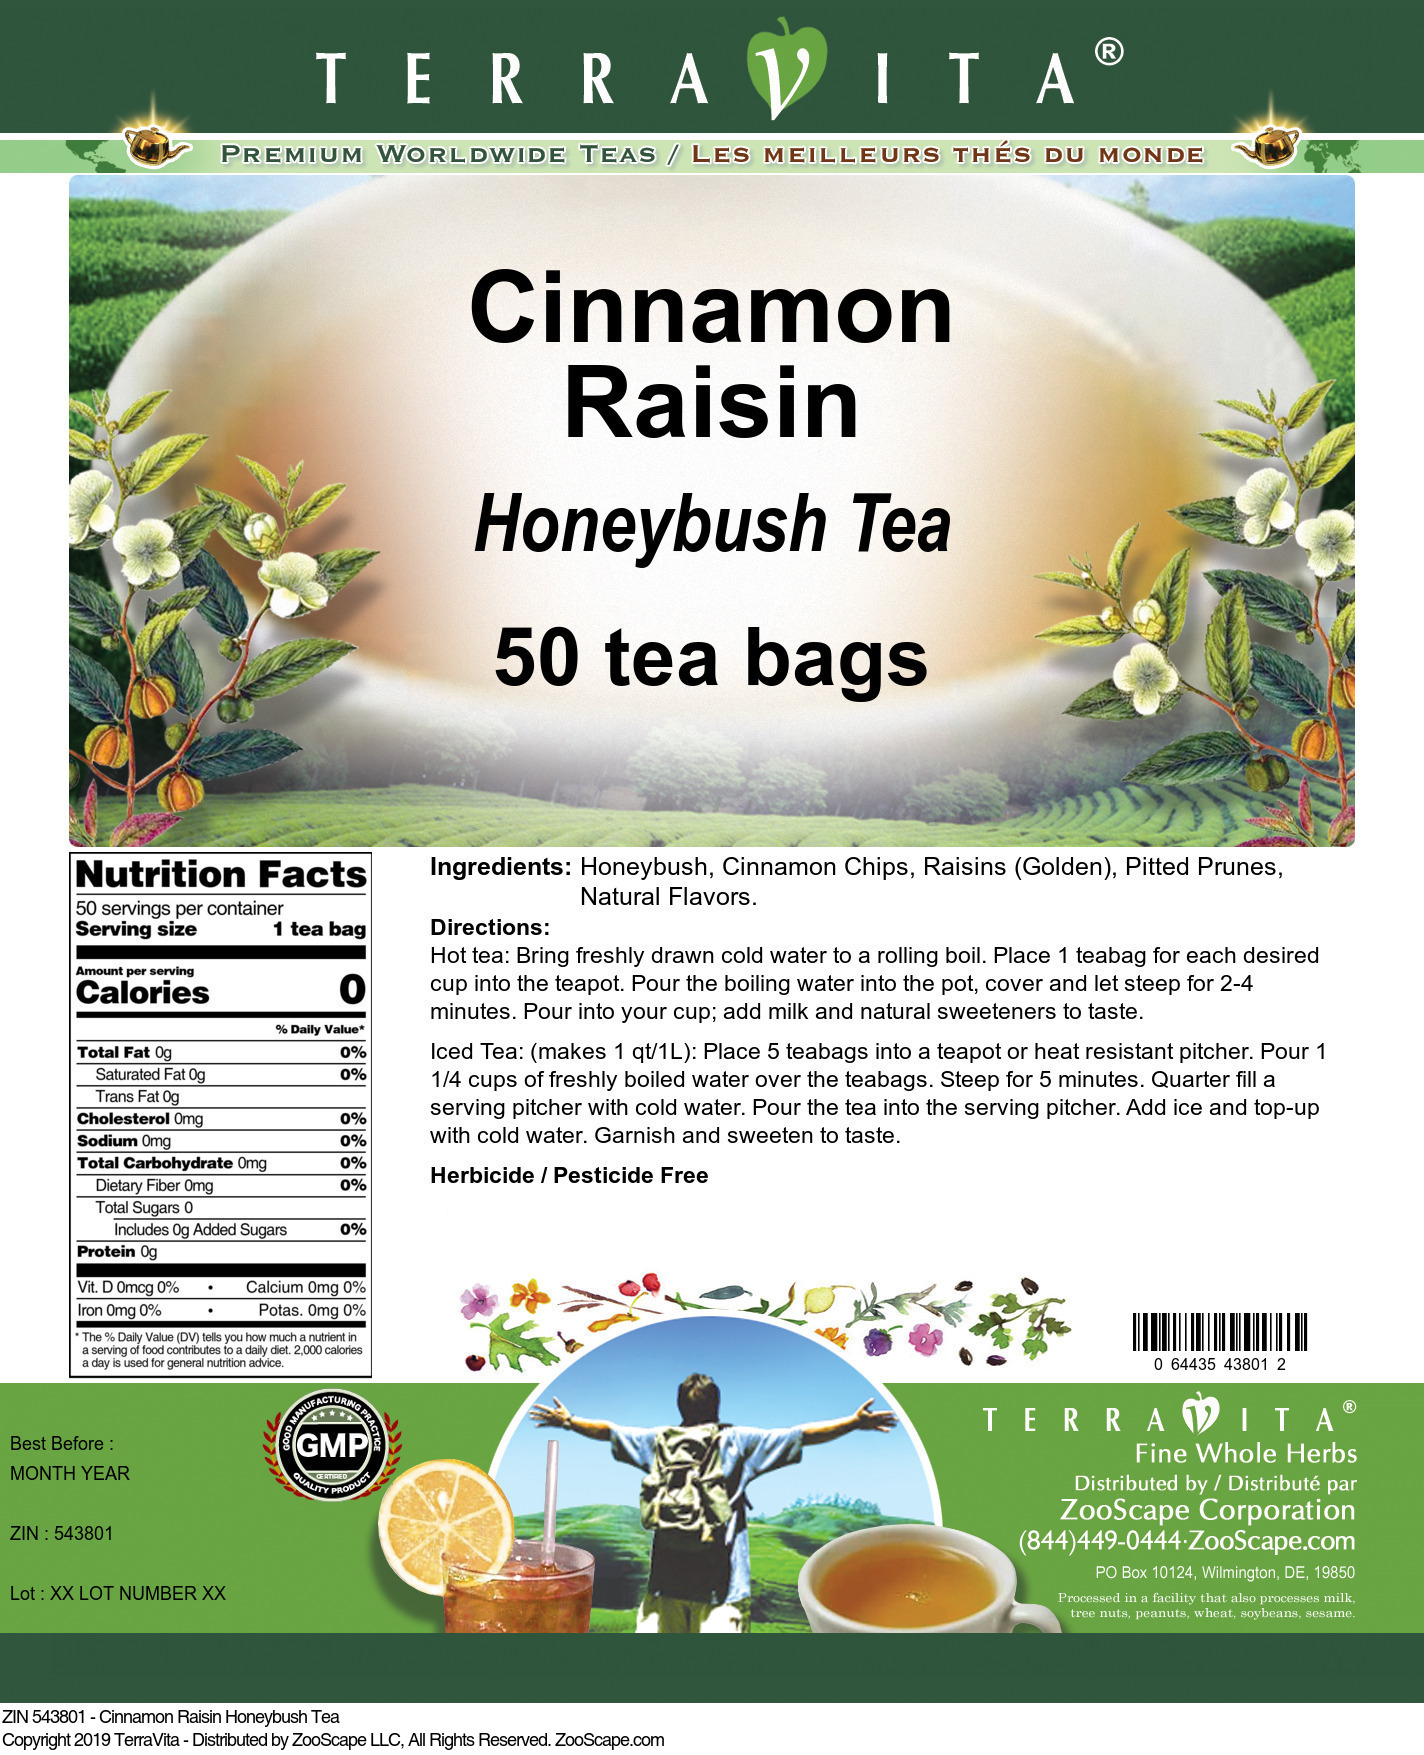 Cinnamon Raisin Honeybush Tea - Label